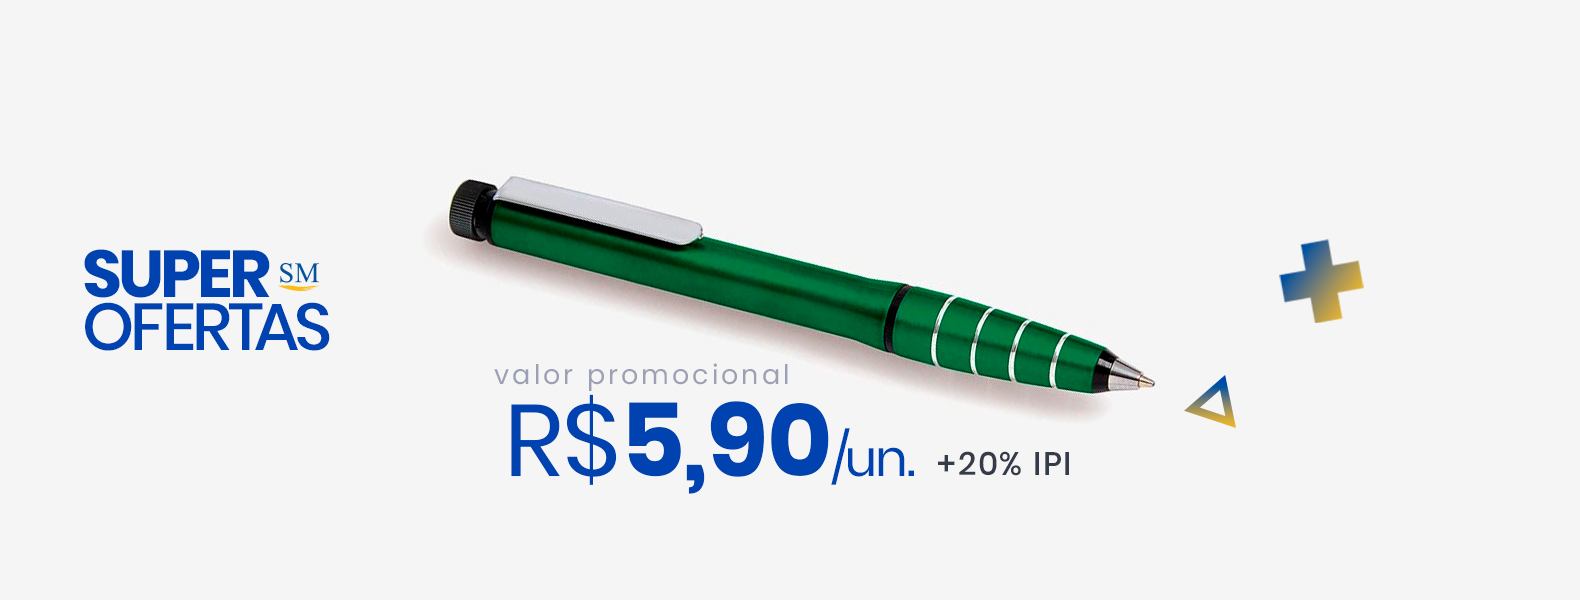 caneta-esferografica-em-aluminio-com-marca-texto-verde...